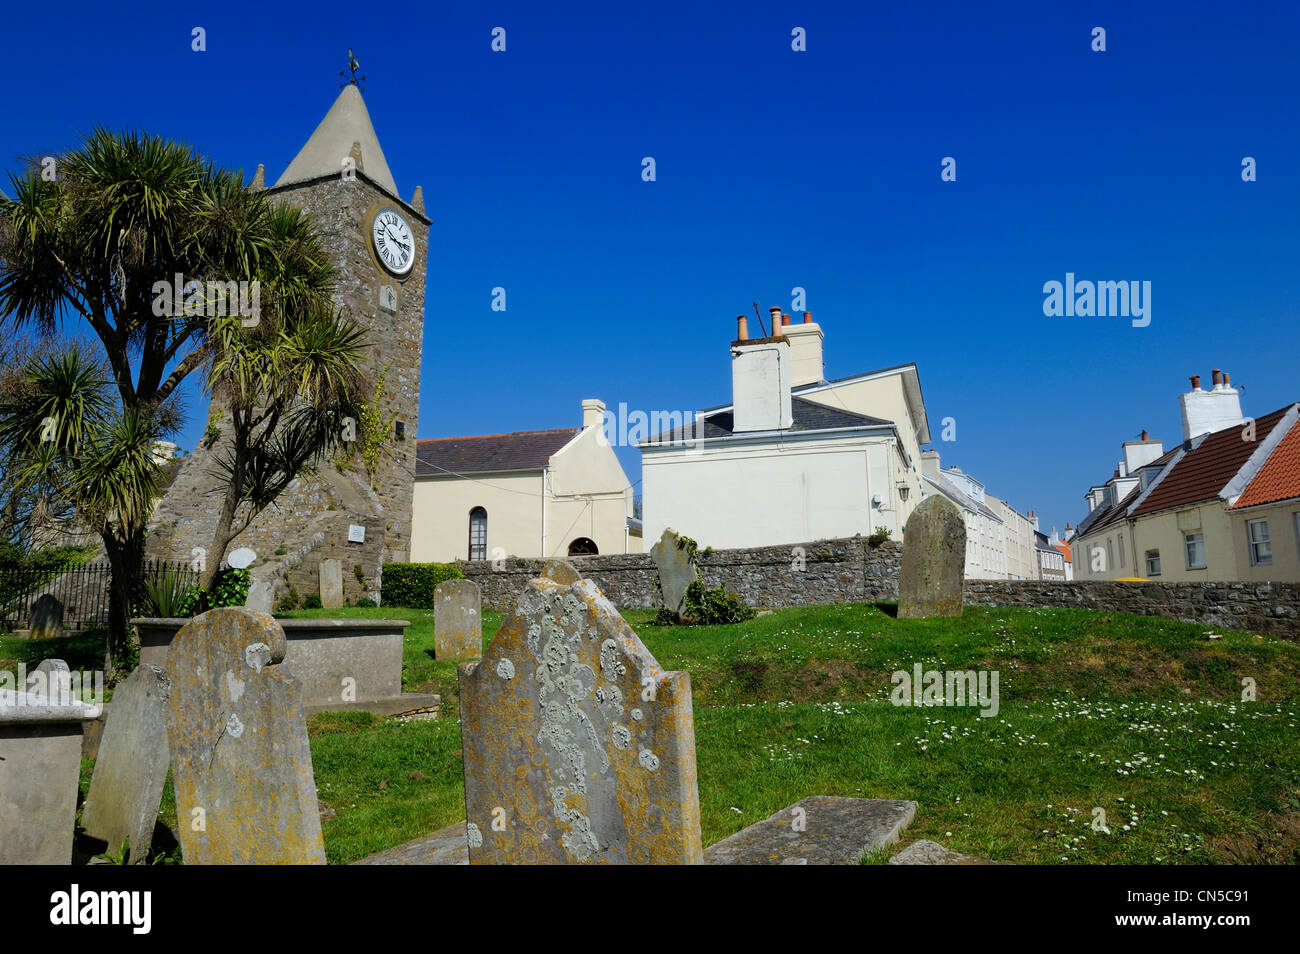 Regno Unito, Isole del Canale, Alderney, cittadina di St Anne, Clocktower dell'ex parrocchia Foto Stock